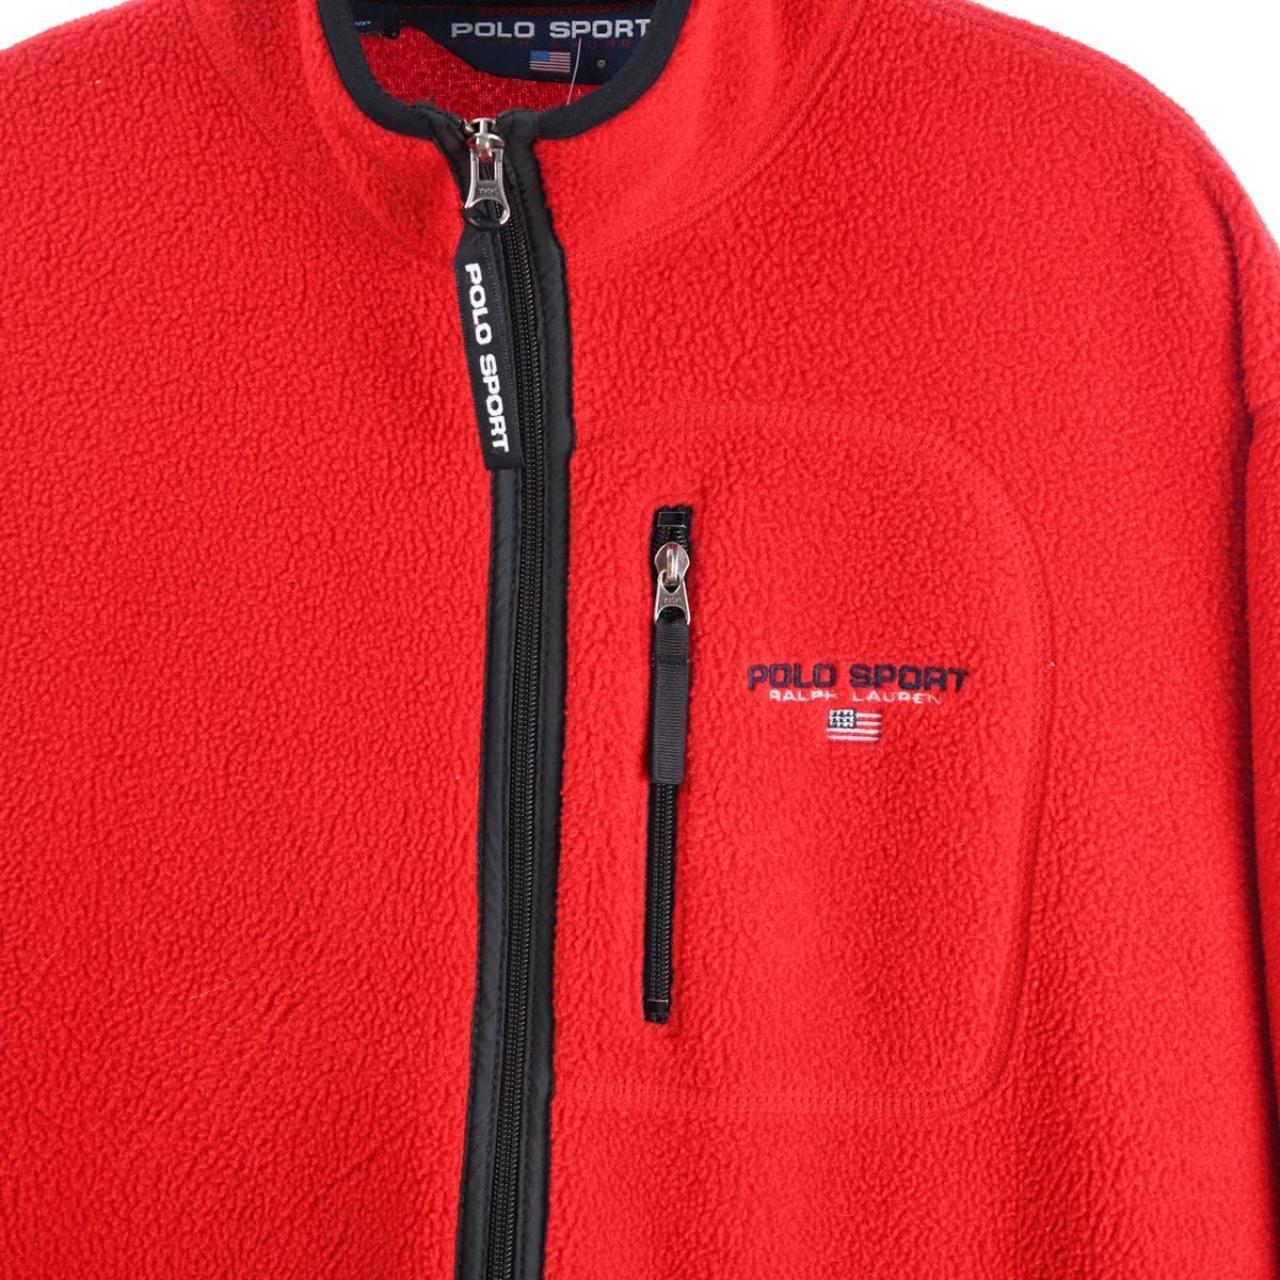 Vintage Ralph Lauren Polo Sport Zip Up Fleece Jacket... - Depop